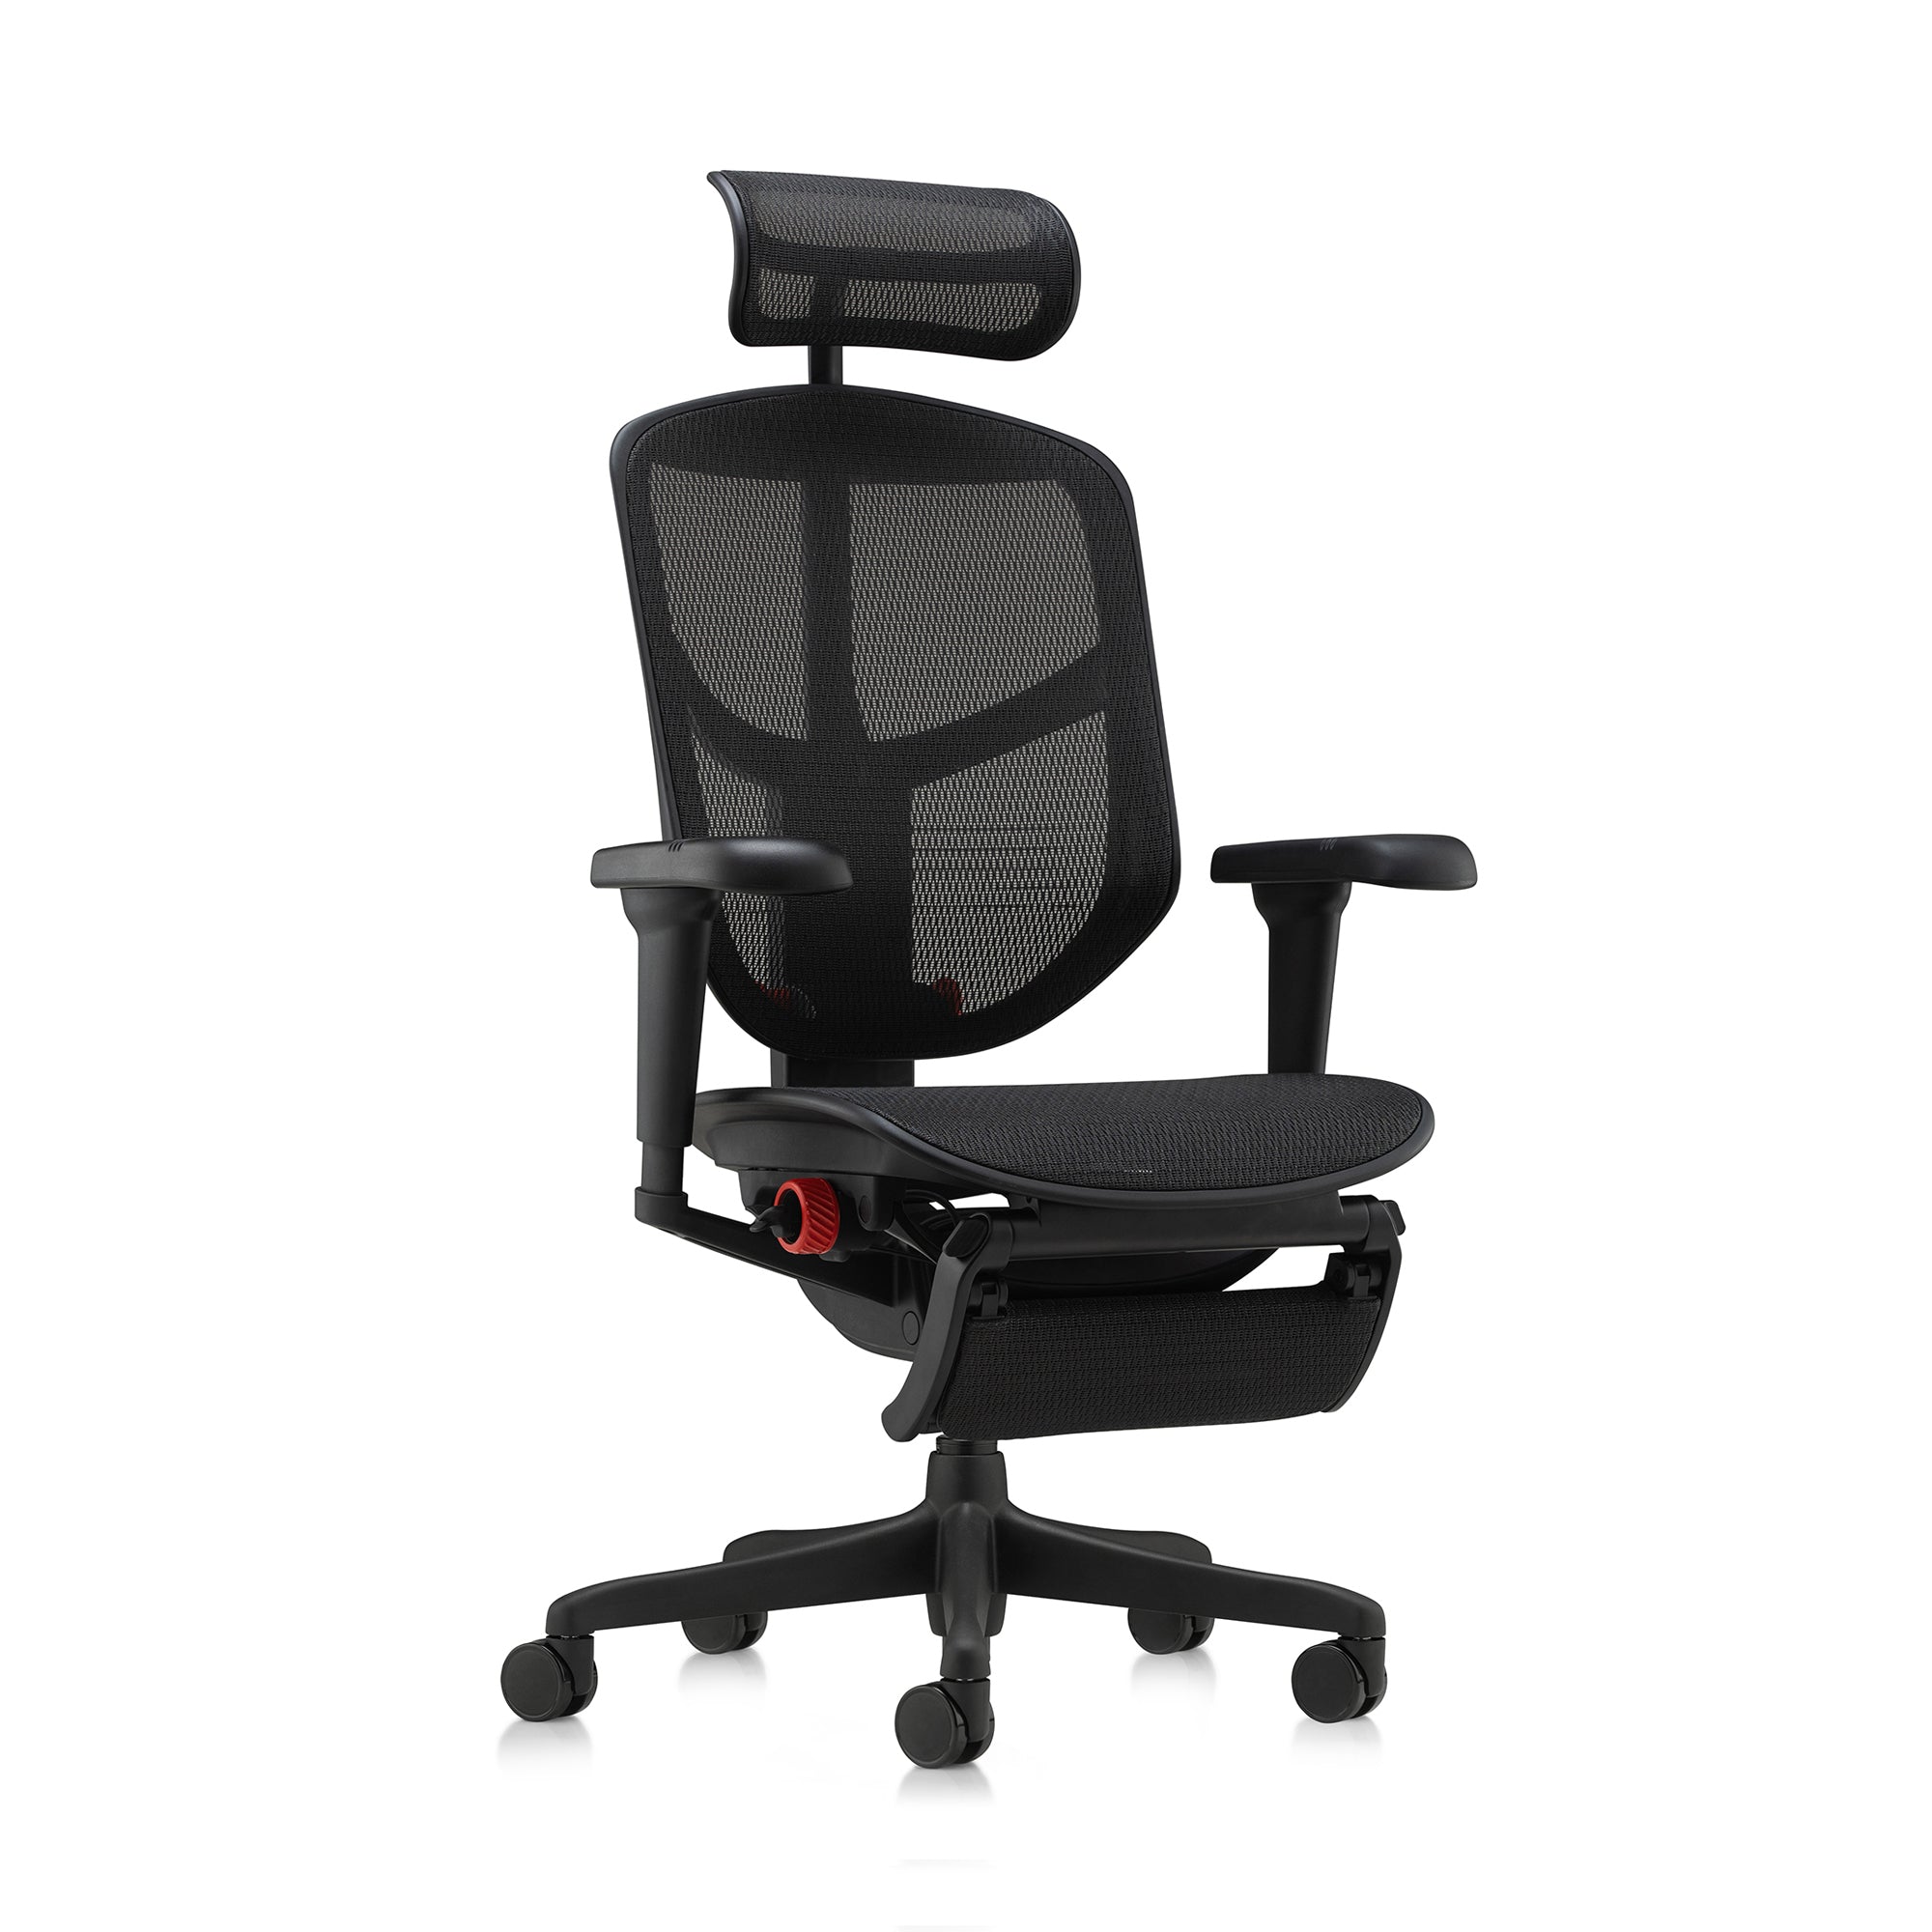 Ergohuman chairs | Full range of ergonomic office and gaming chairs